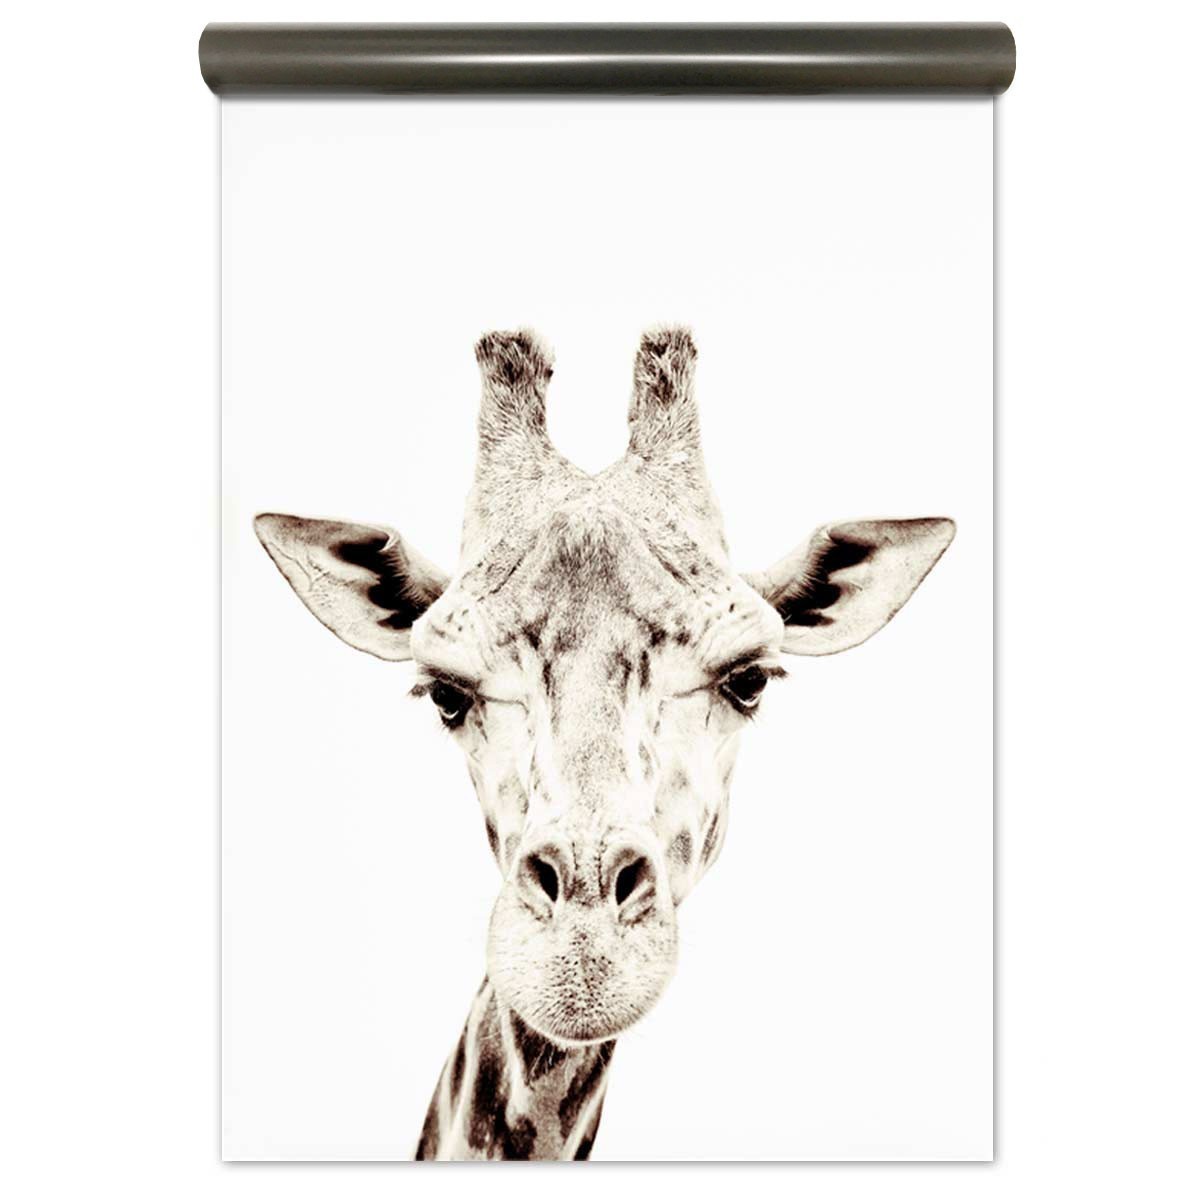 Tapet magnetic - Girafa - 62X265 cm